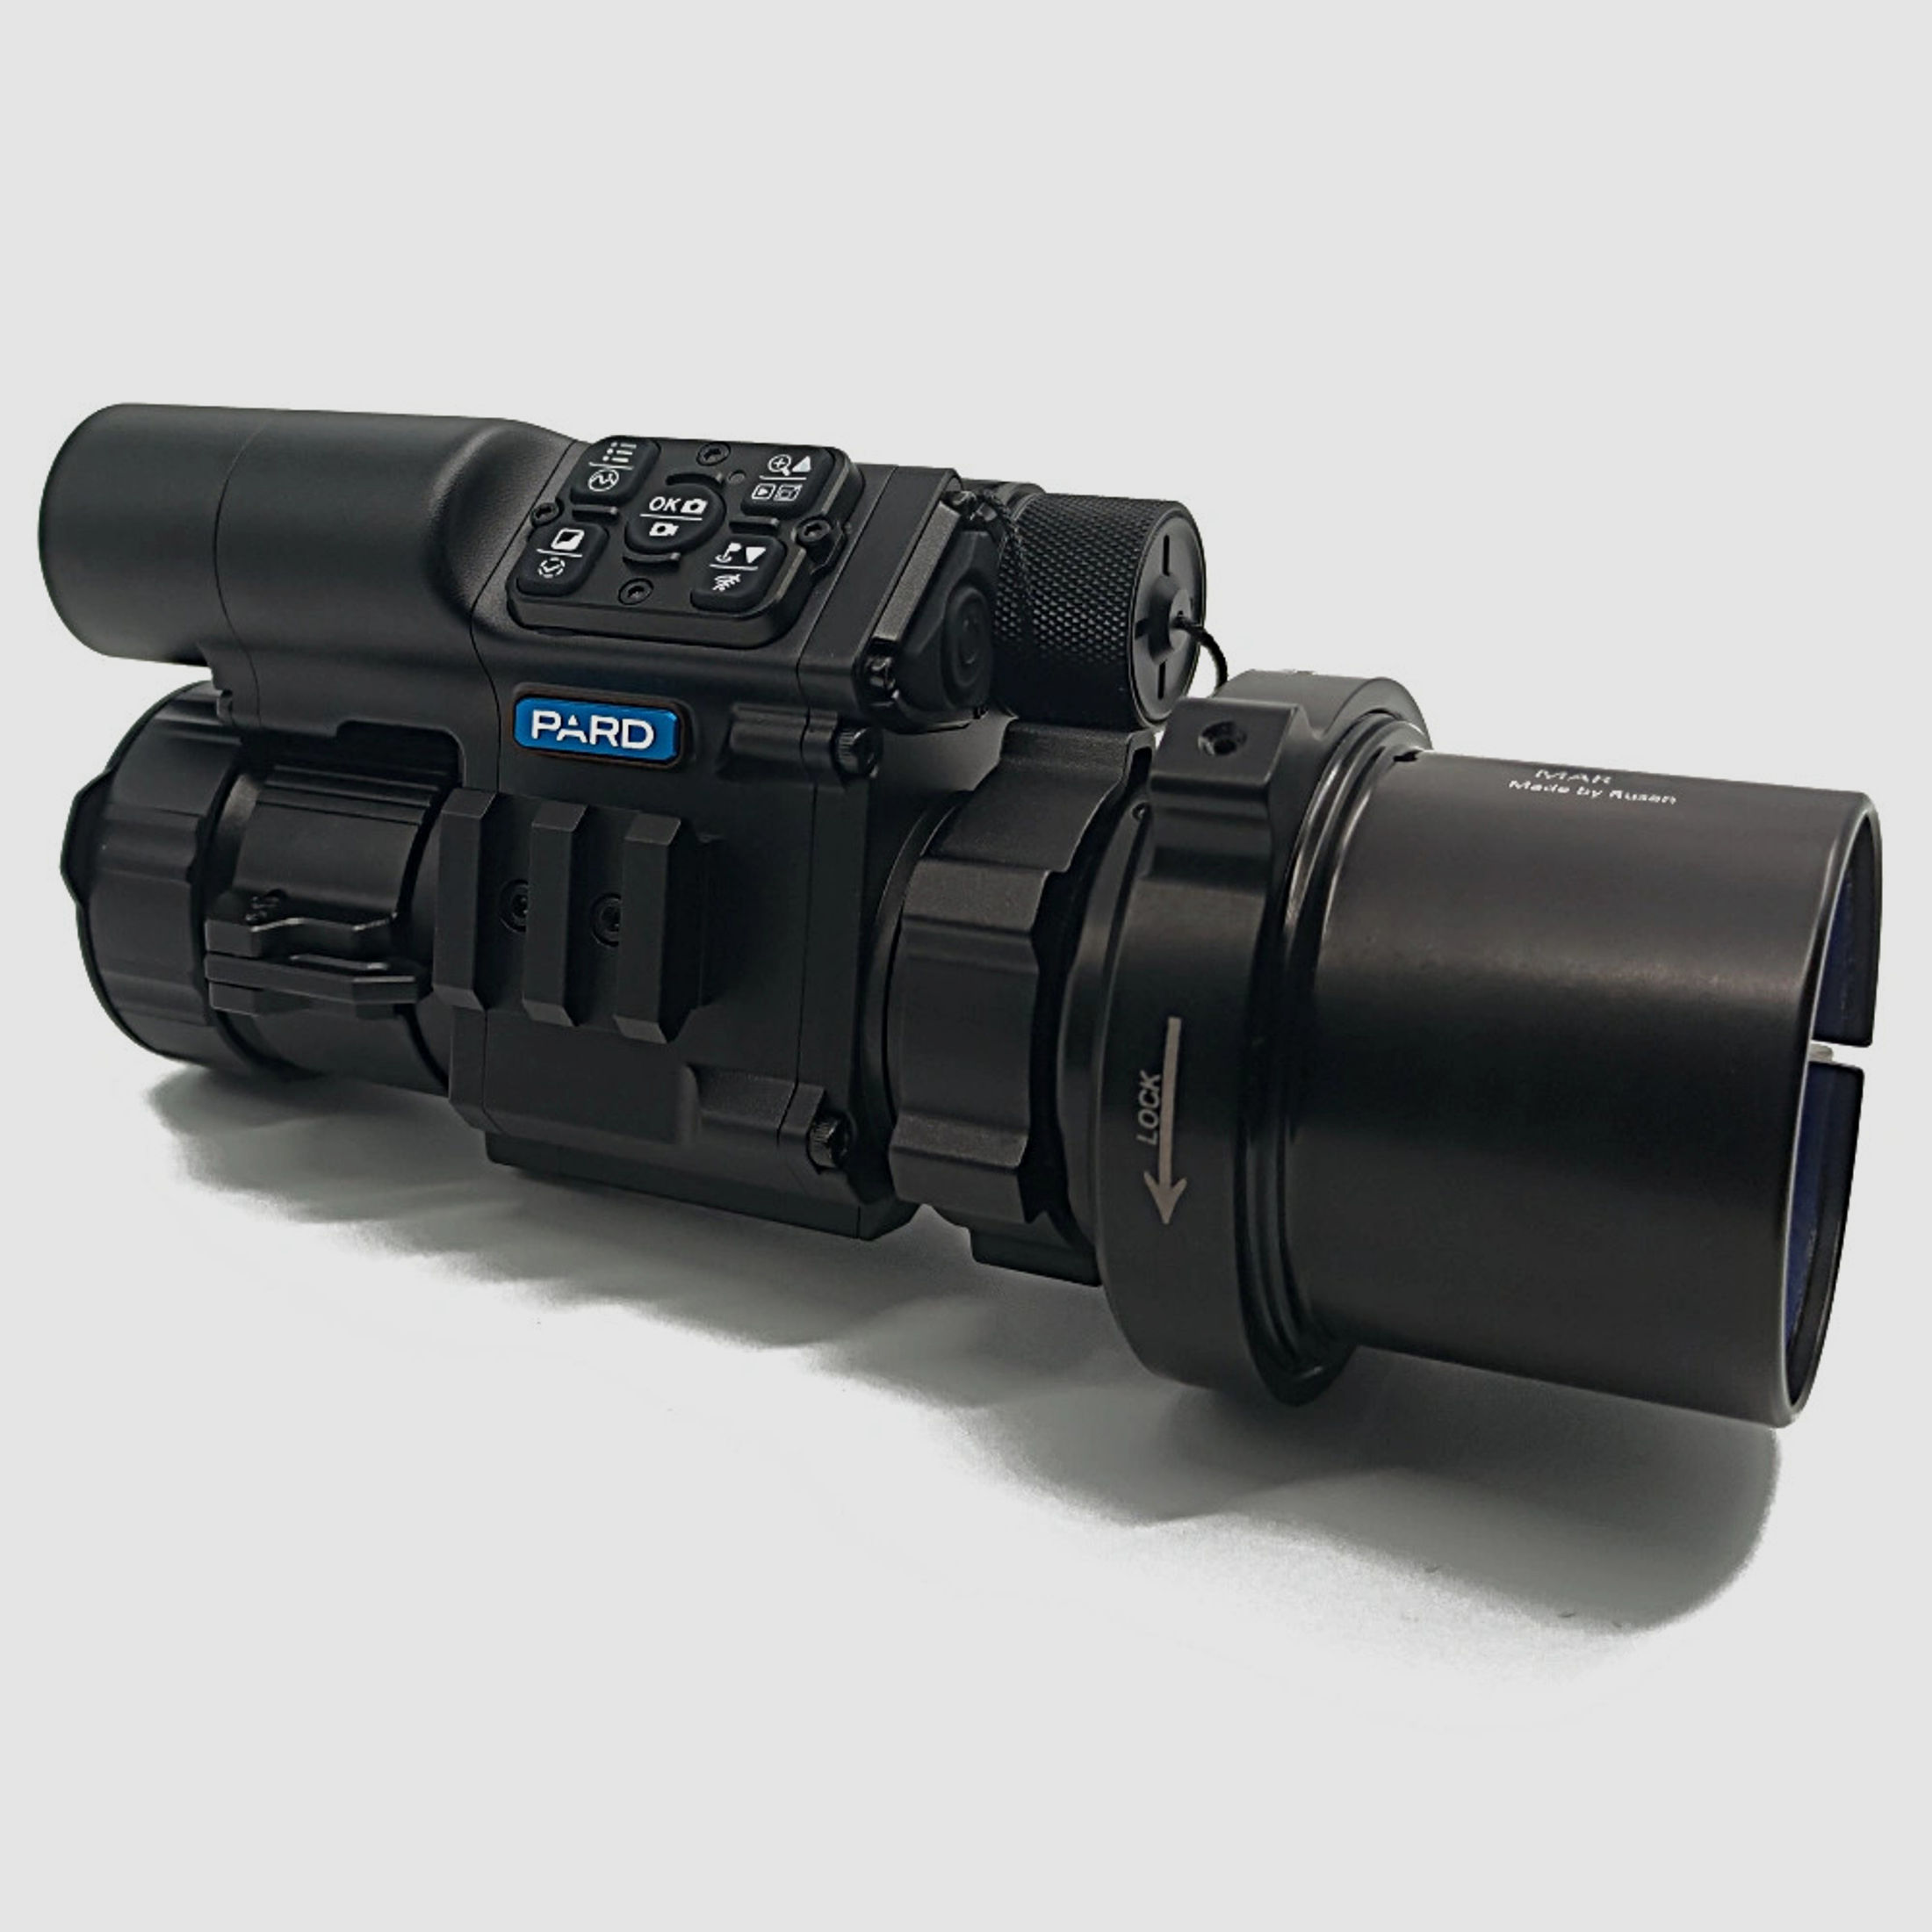 PARD FD1 Nachtsicht 3 in 1 Vorsatz, Monokular & Zielfernrohr - 940 nm mit LRF 54 mm RUSAN MAR + RUSAN MCR